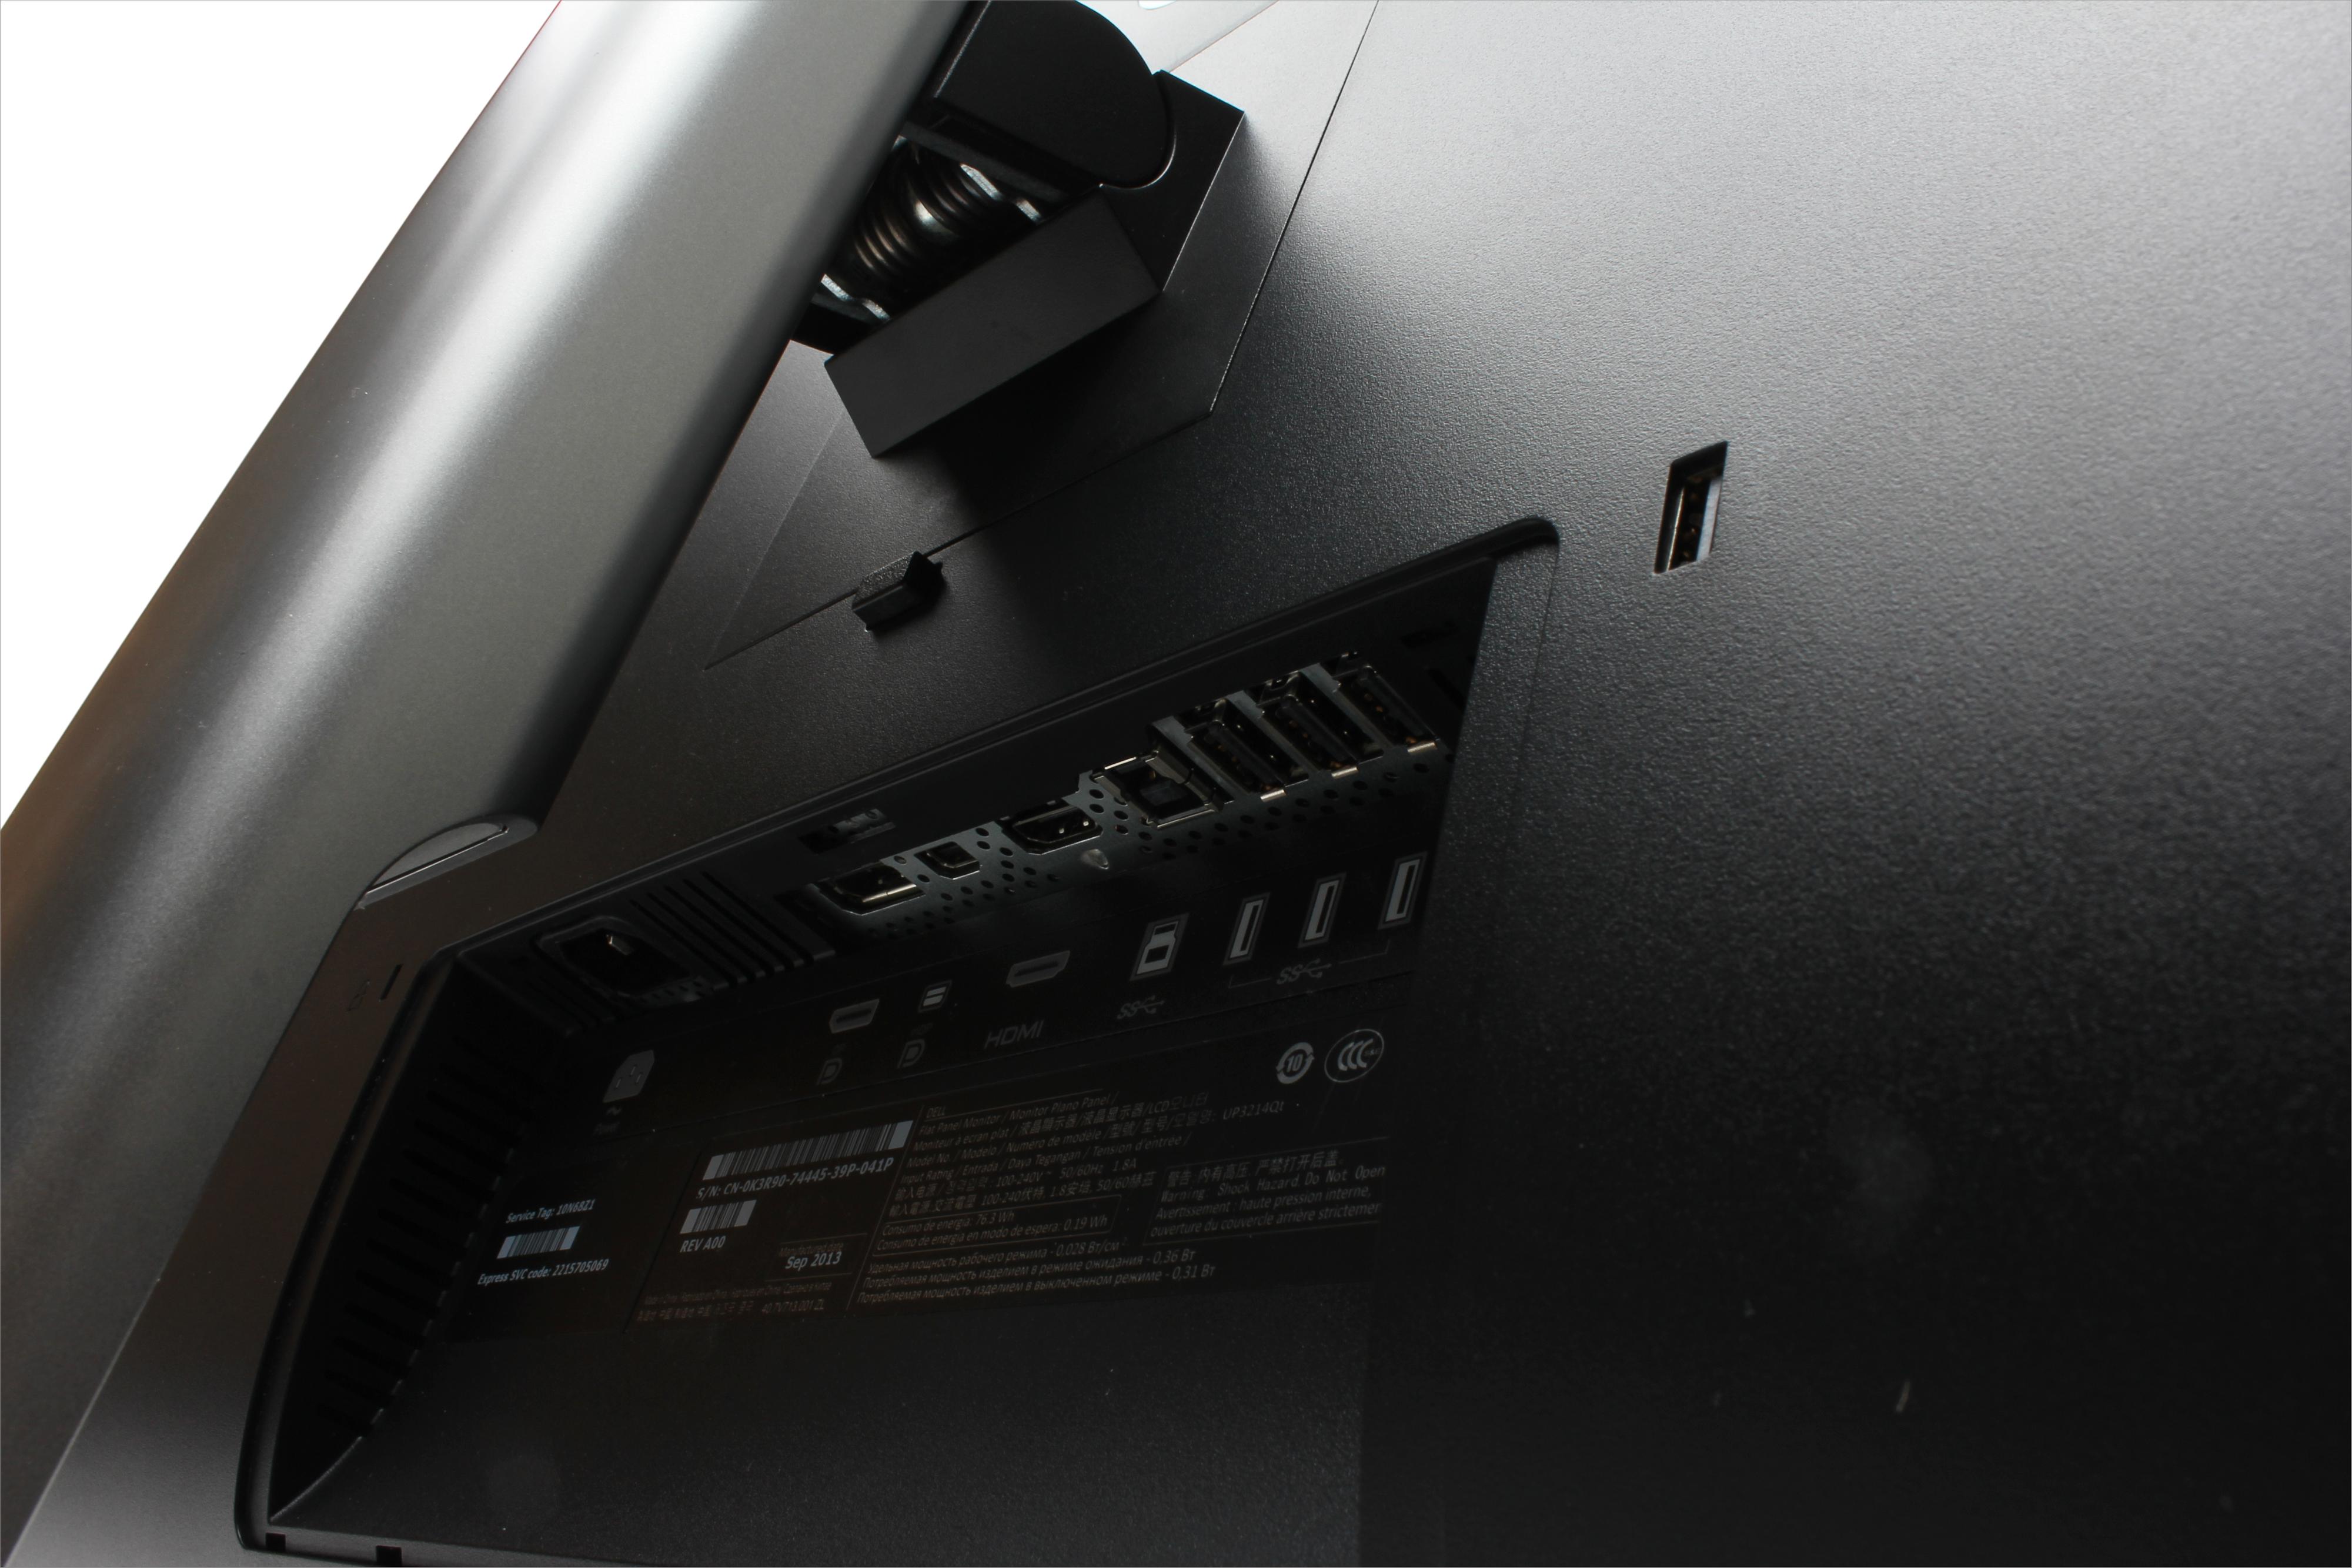 Av videotilkoblinger finner vi HDMI og DisplayPort både av vanlig og mini-type.Foto: Rolf B. Wegner, Hardware.no